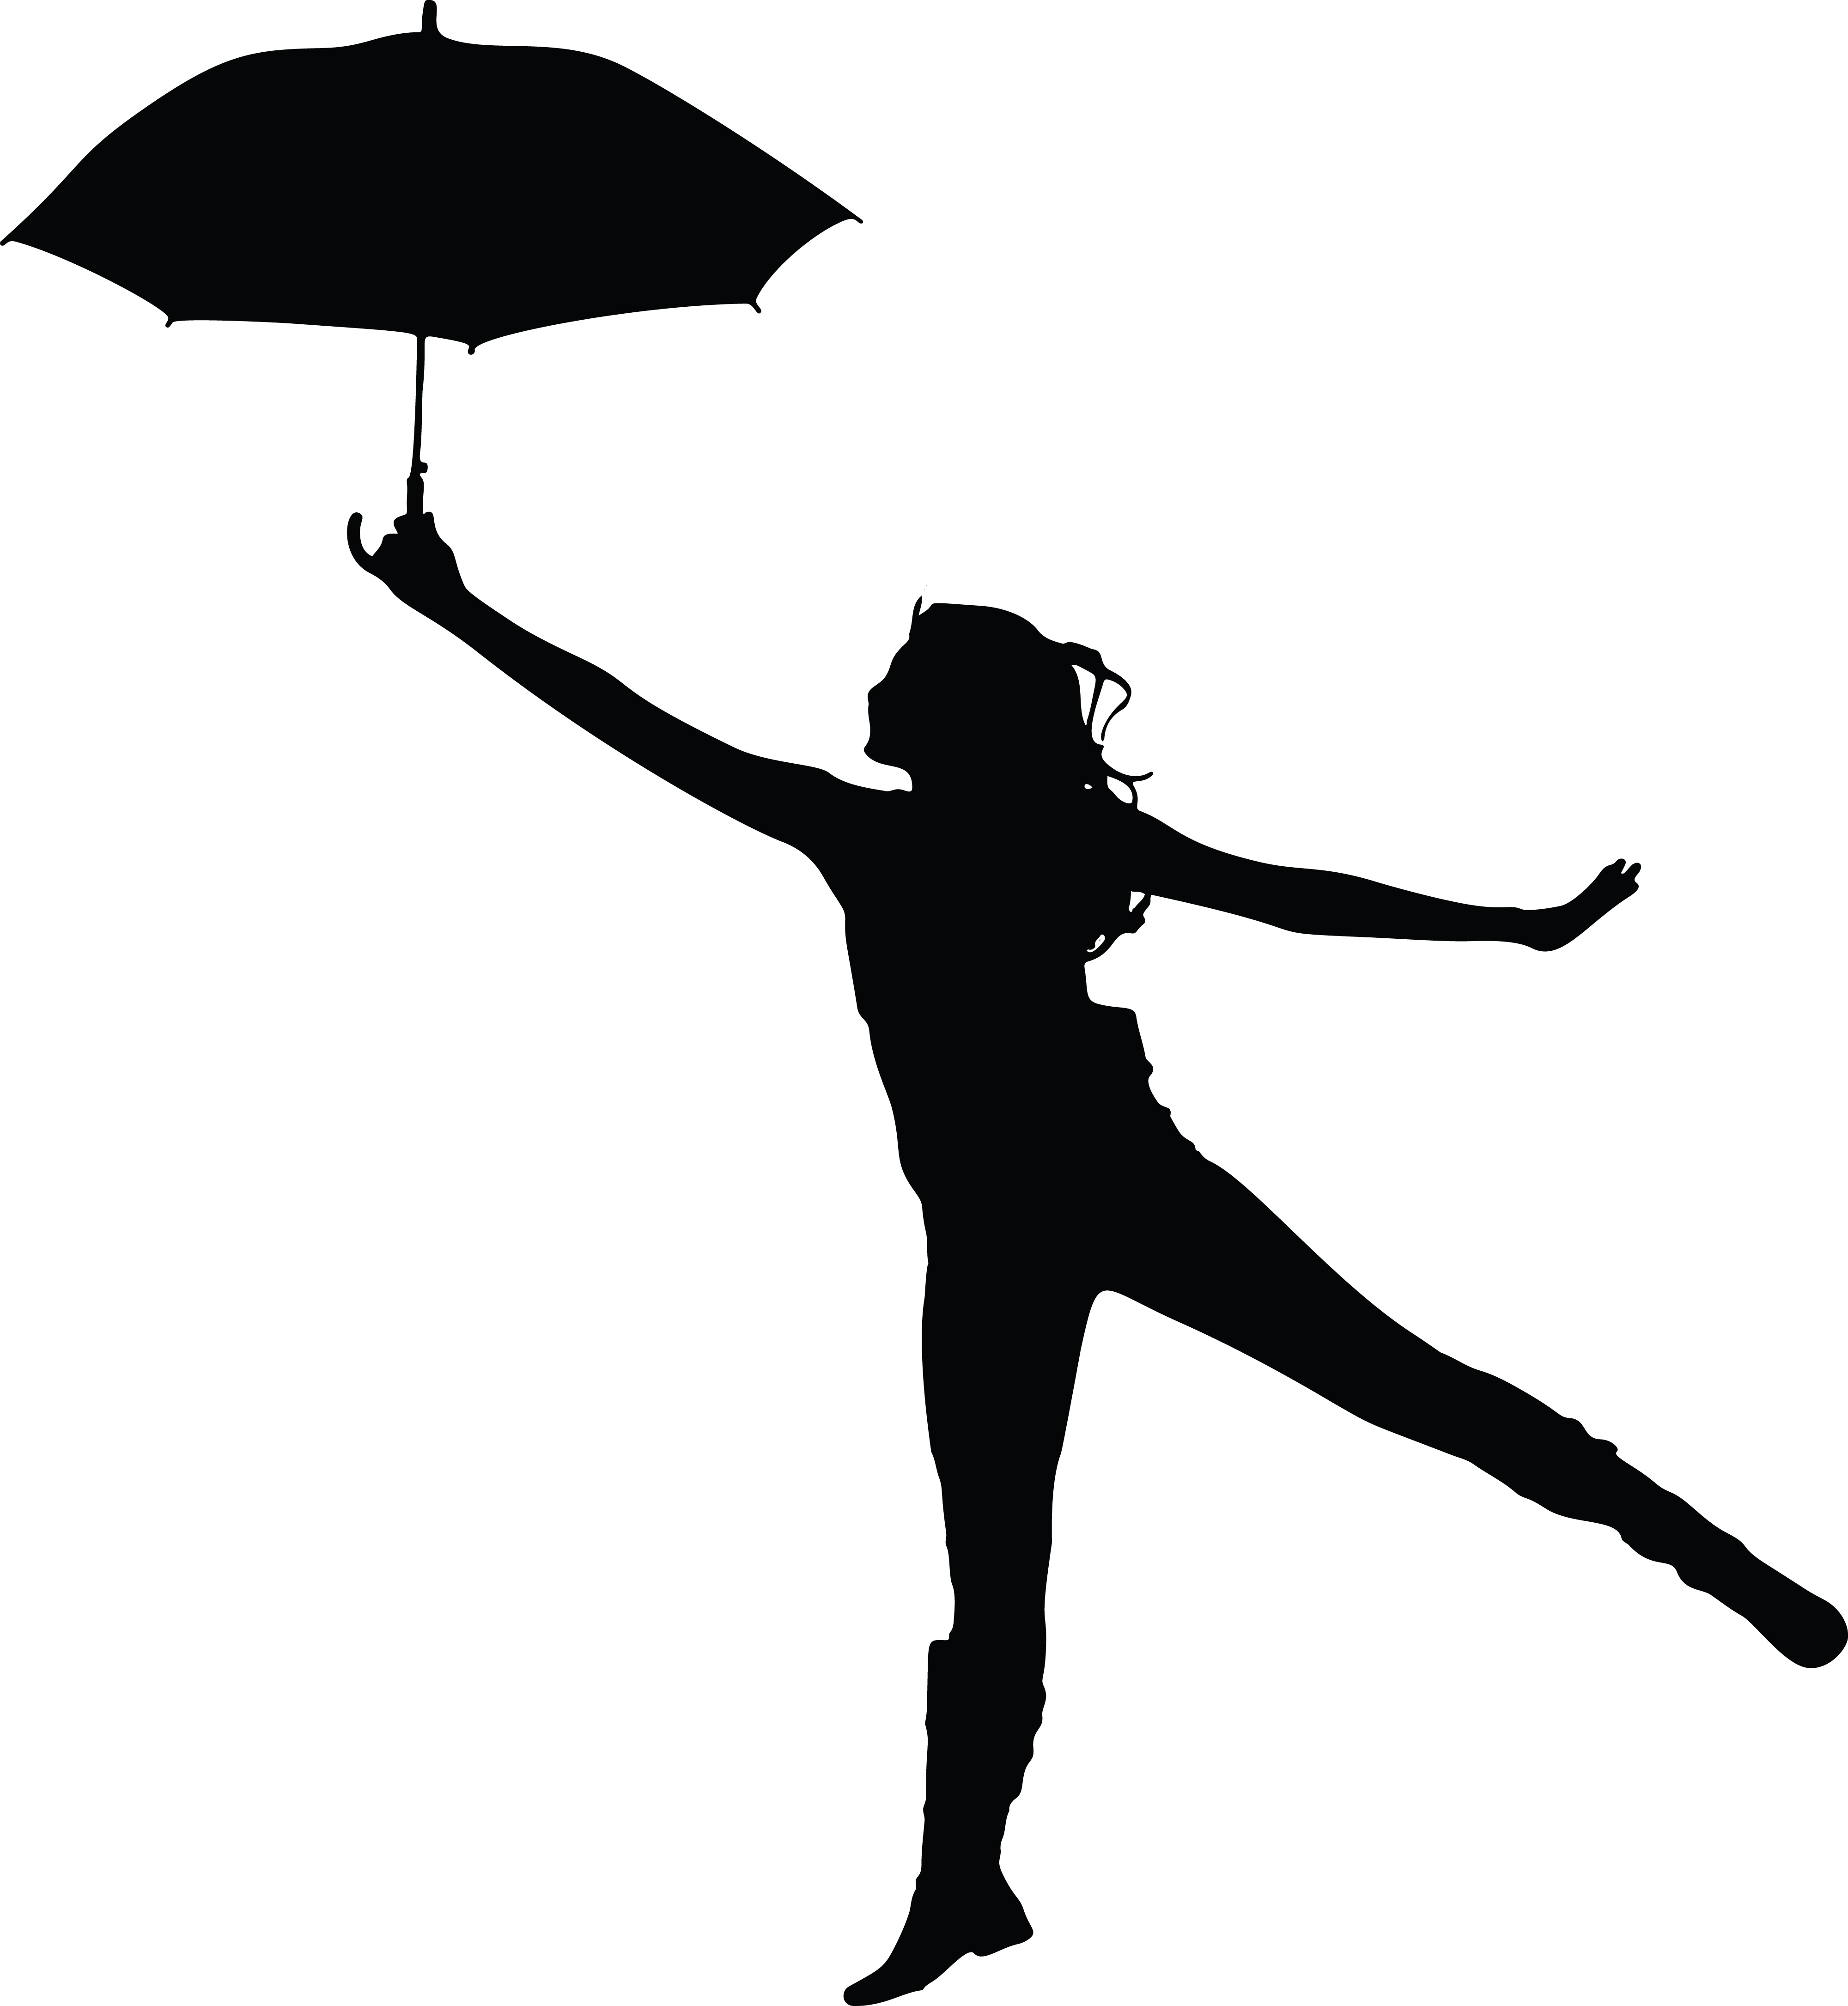 umbrella silhouette clip art - photo #47